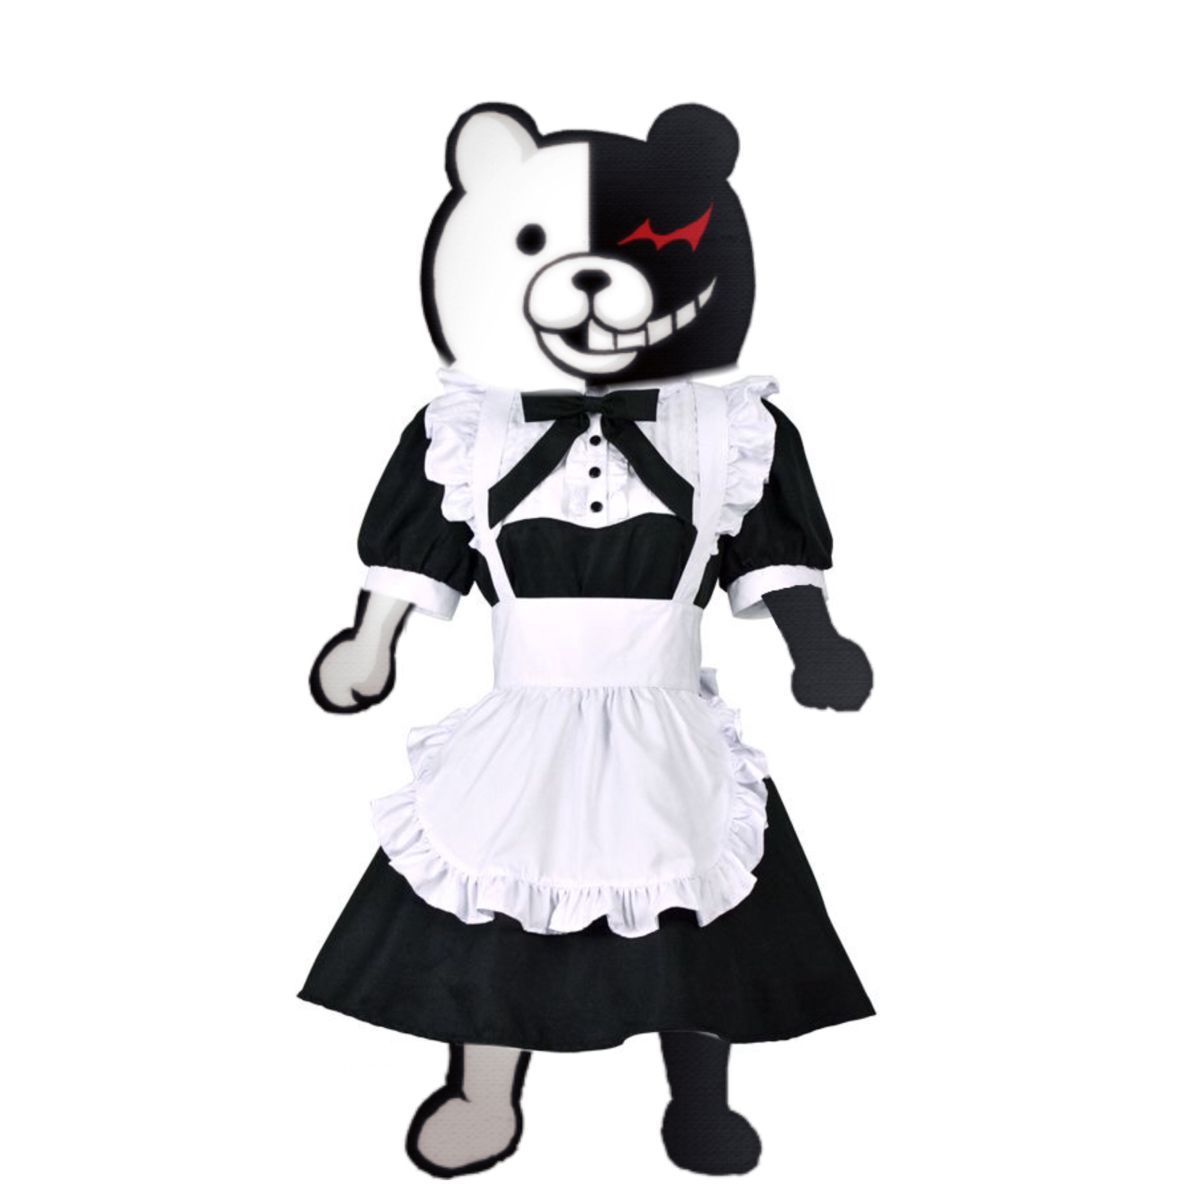 monokuma in a maid dress?? he do be .com